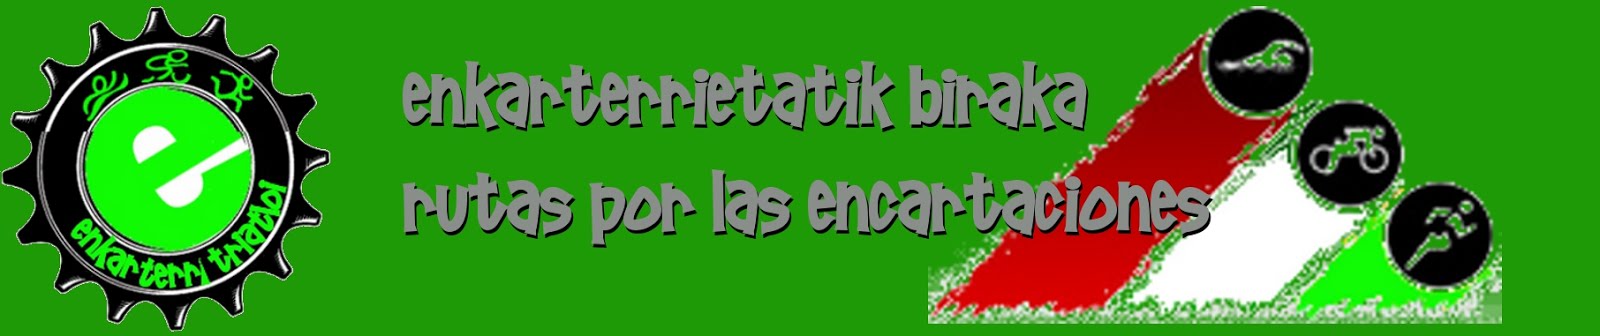 Enkarterrietatik biraka / Rutas por las Encartaciones con Enkarterri Triatloi